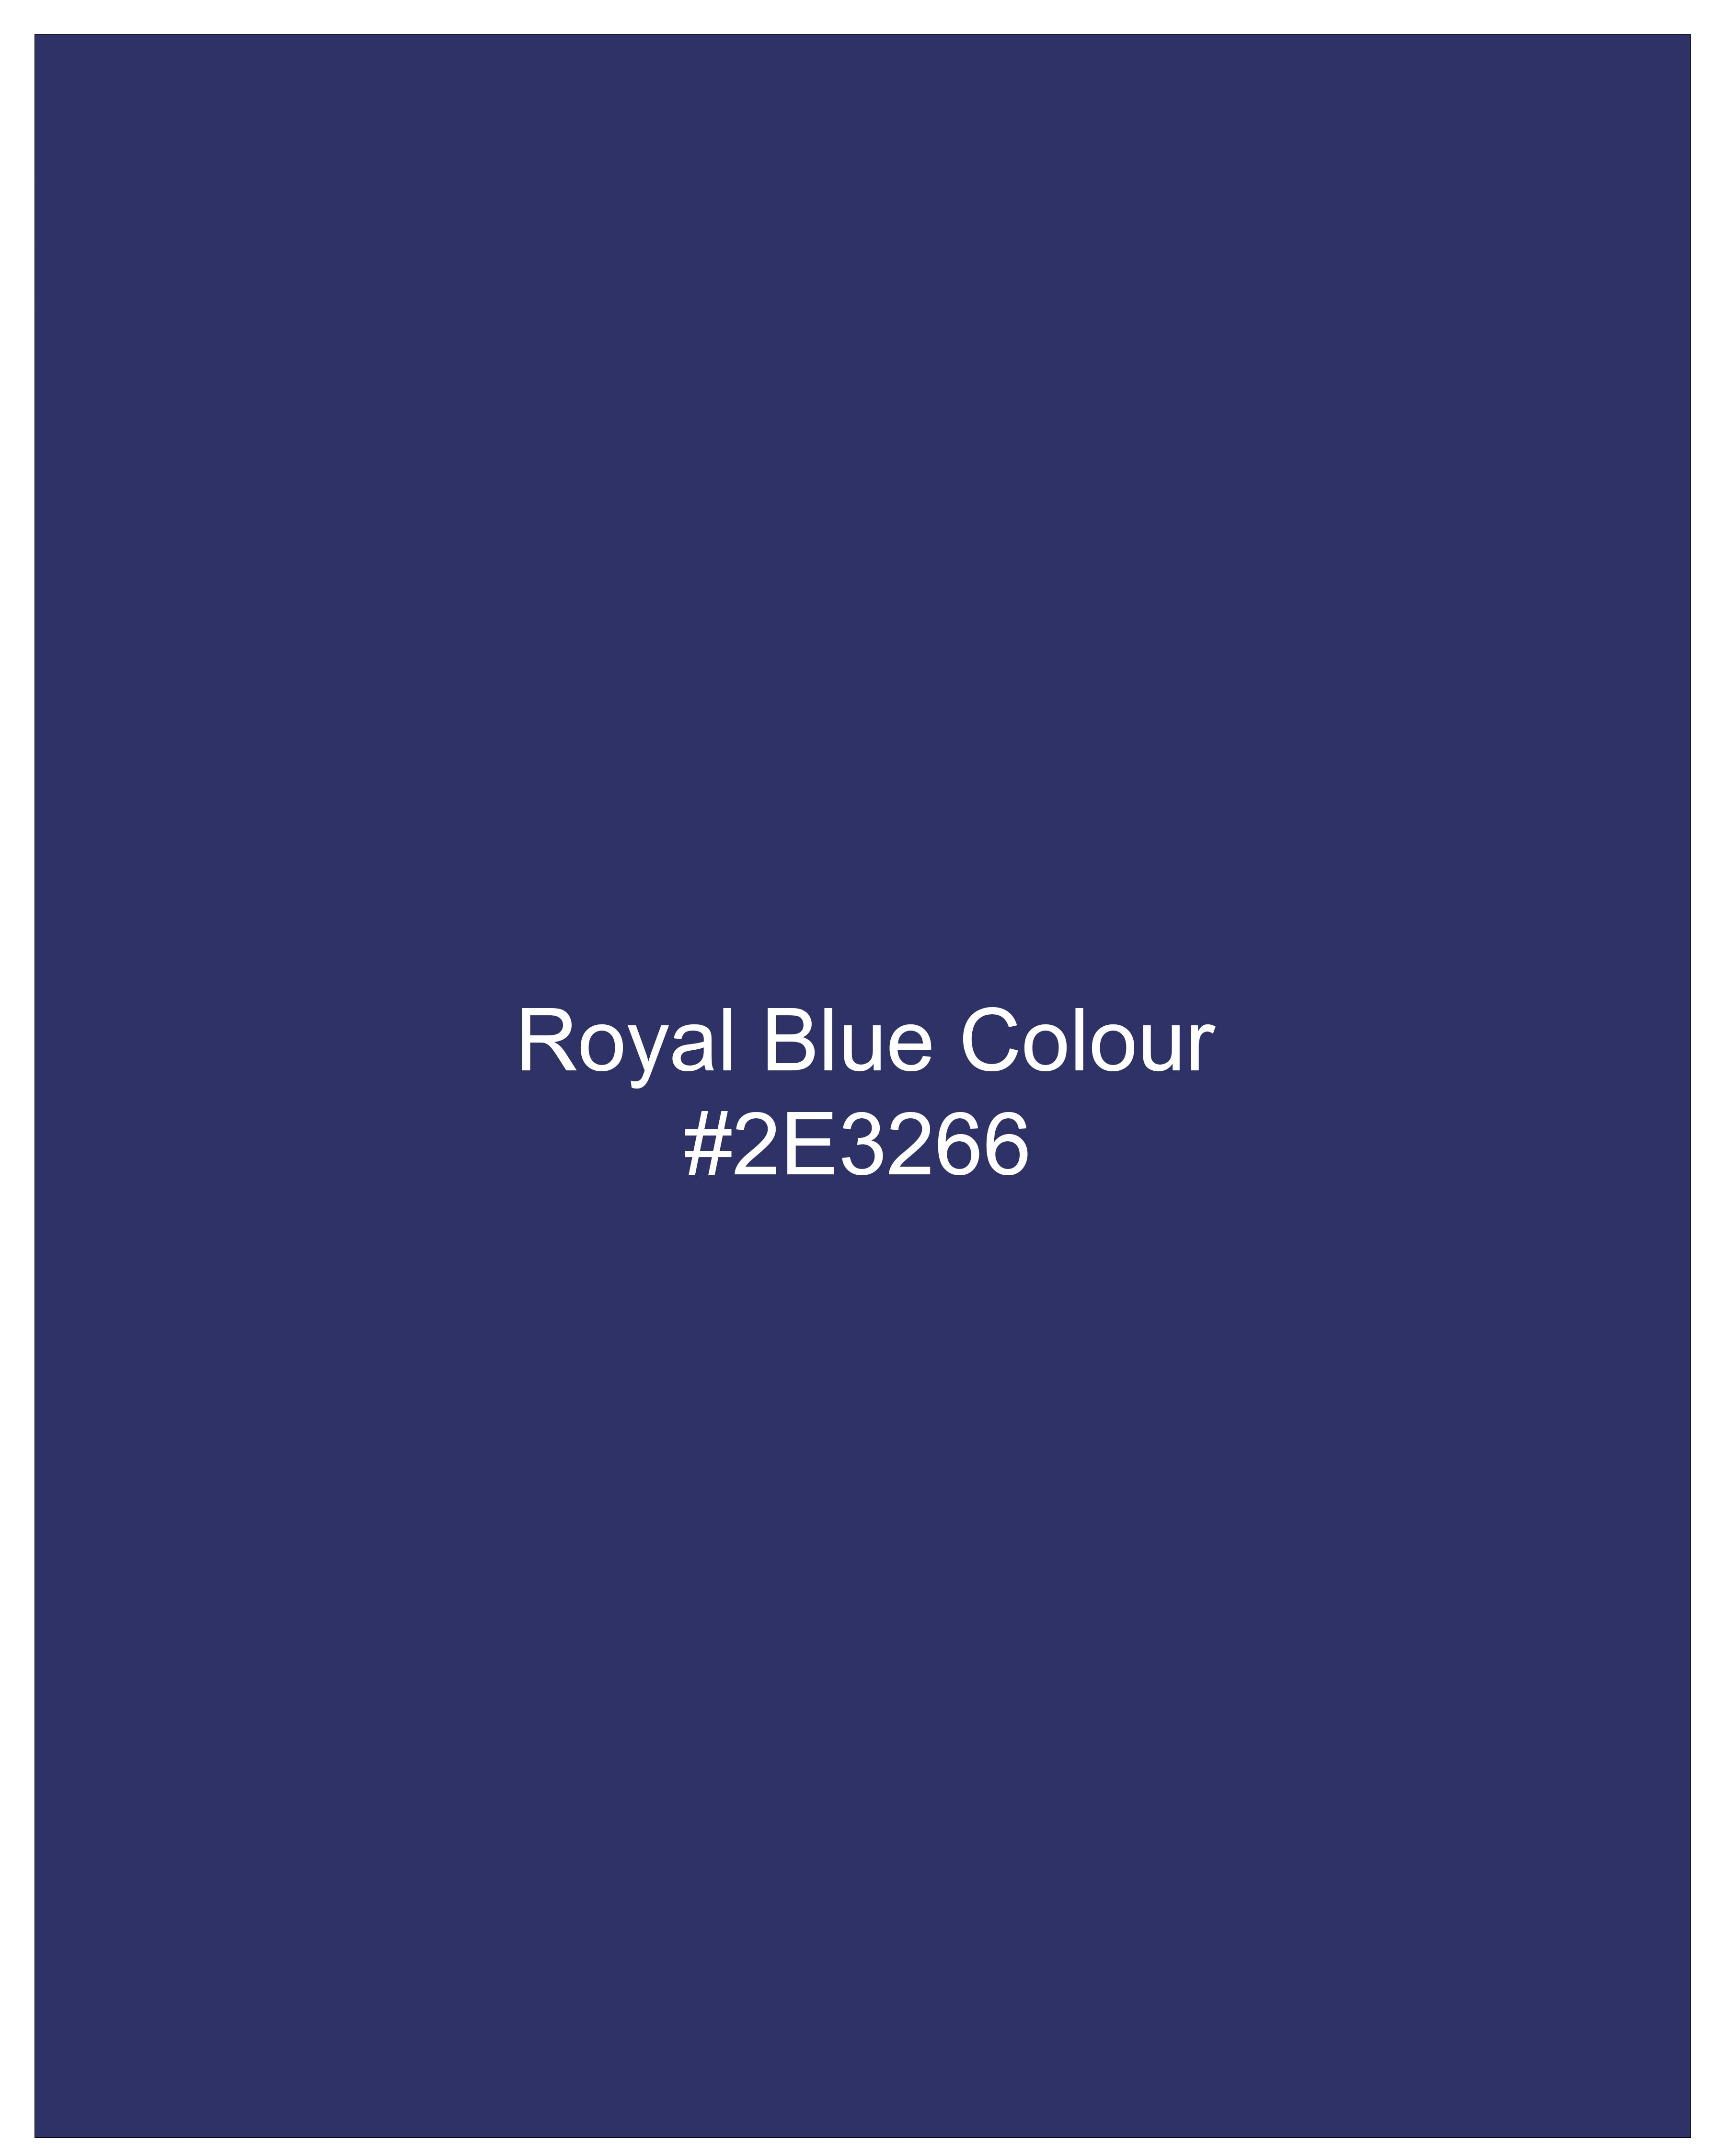 Royal Blue Bandhgala Blazer